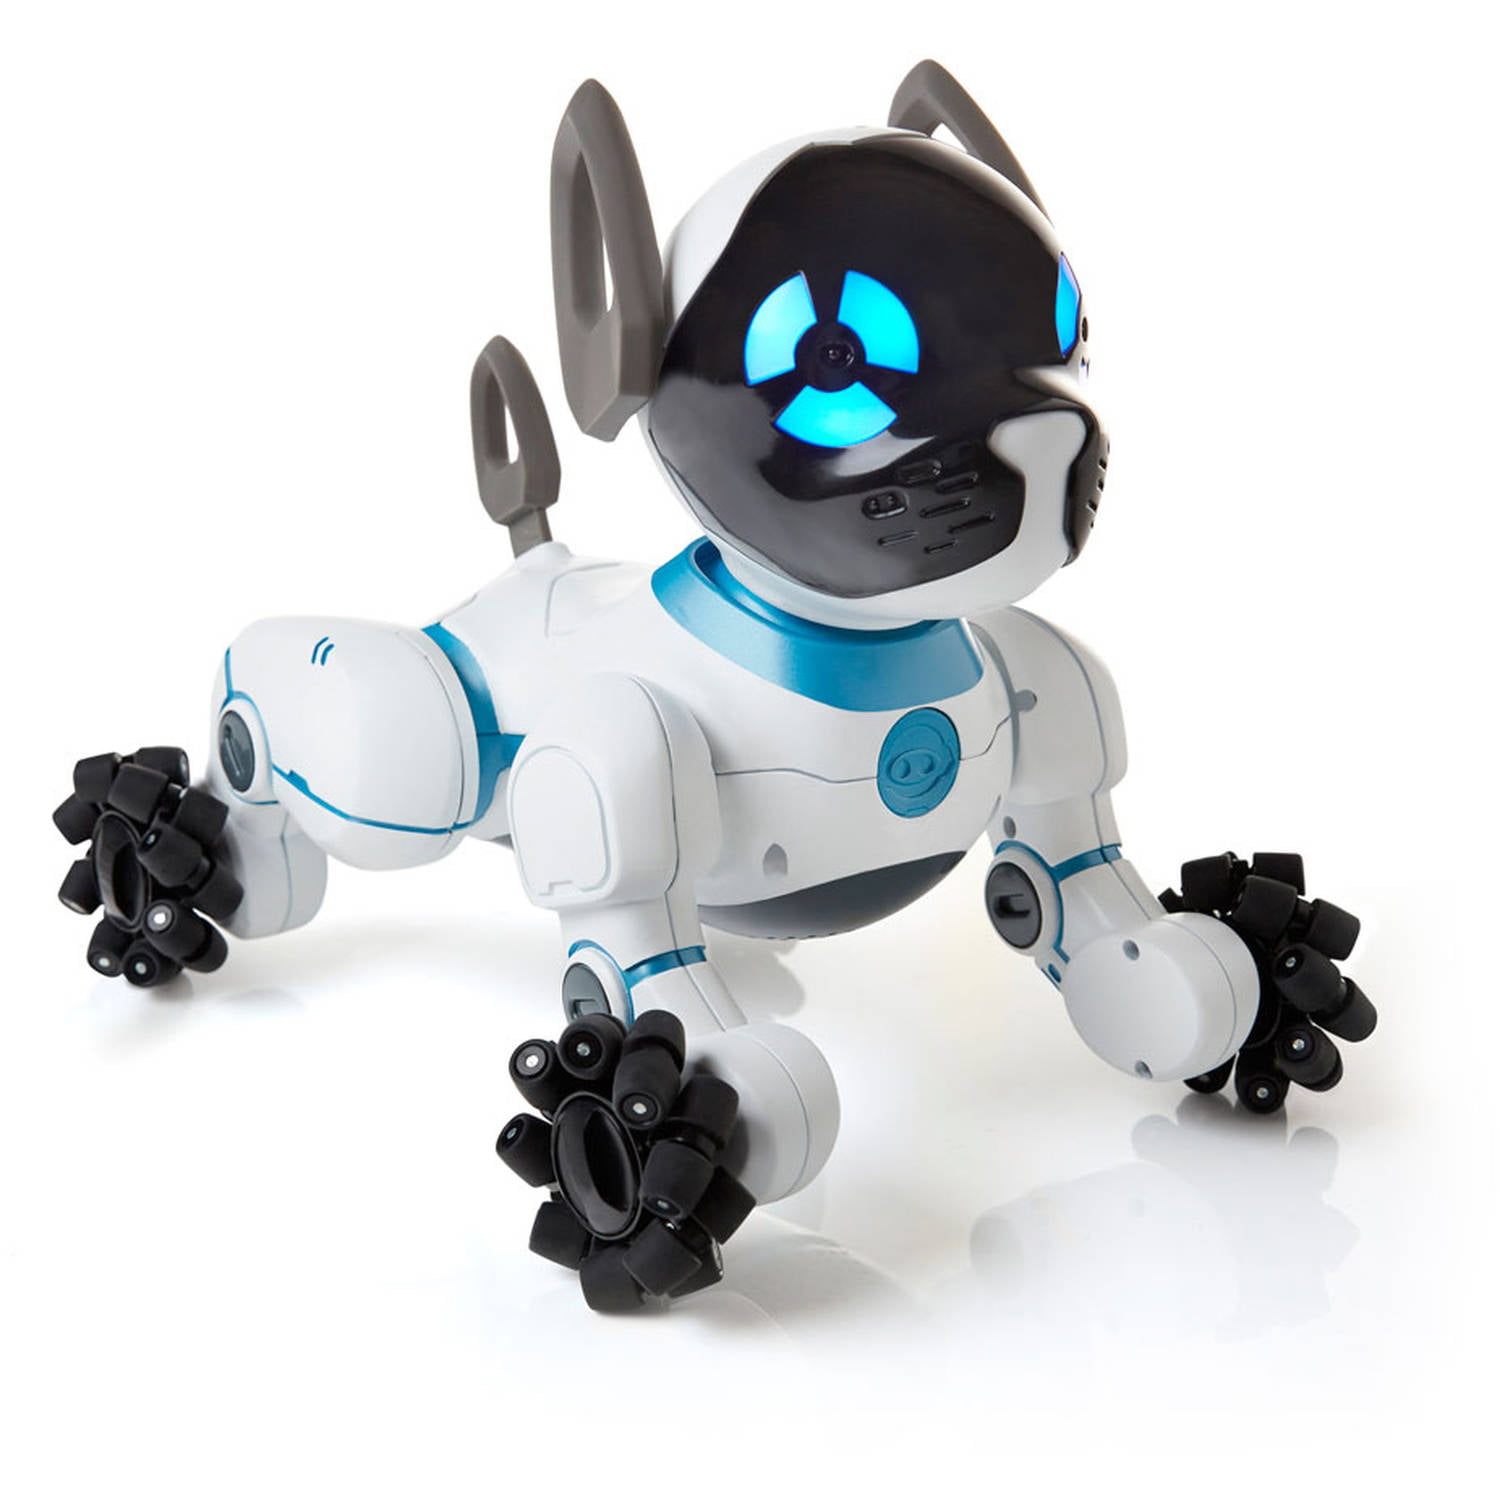 Электрическая собака купить. Робот WOWWEE Chip. Робот WOWWEE собачка. Робот WOWWEE 0805 собачка Chip. Робот-собака WOWWEE Chip (White).